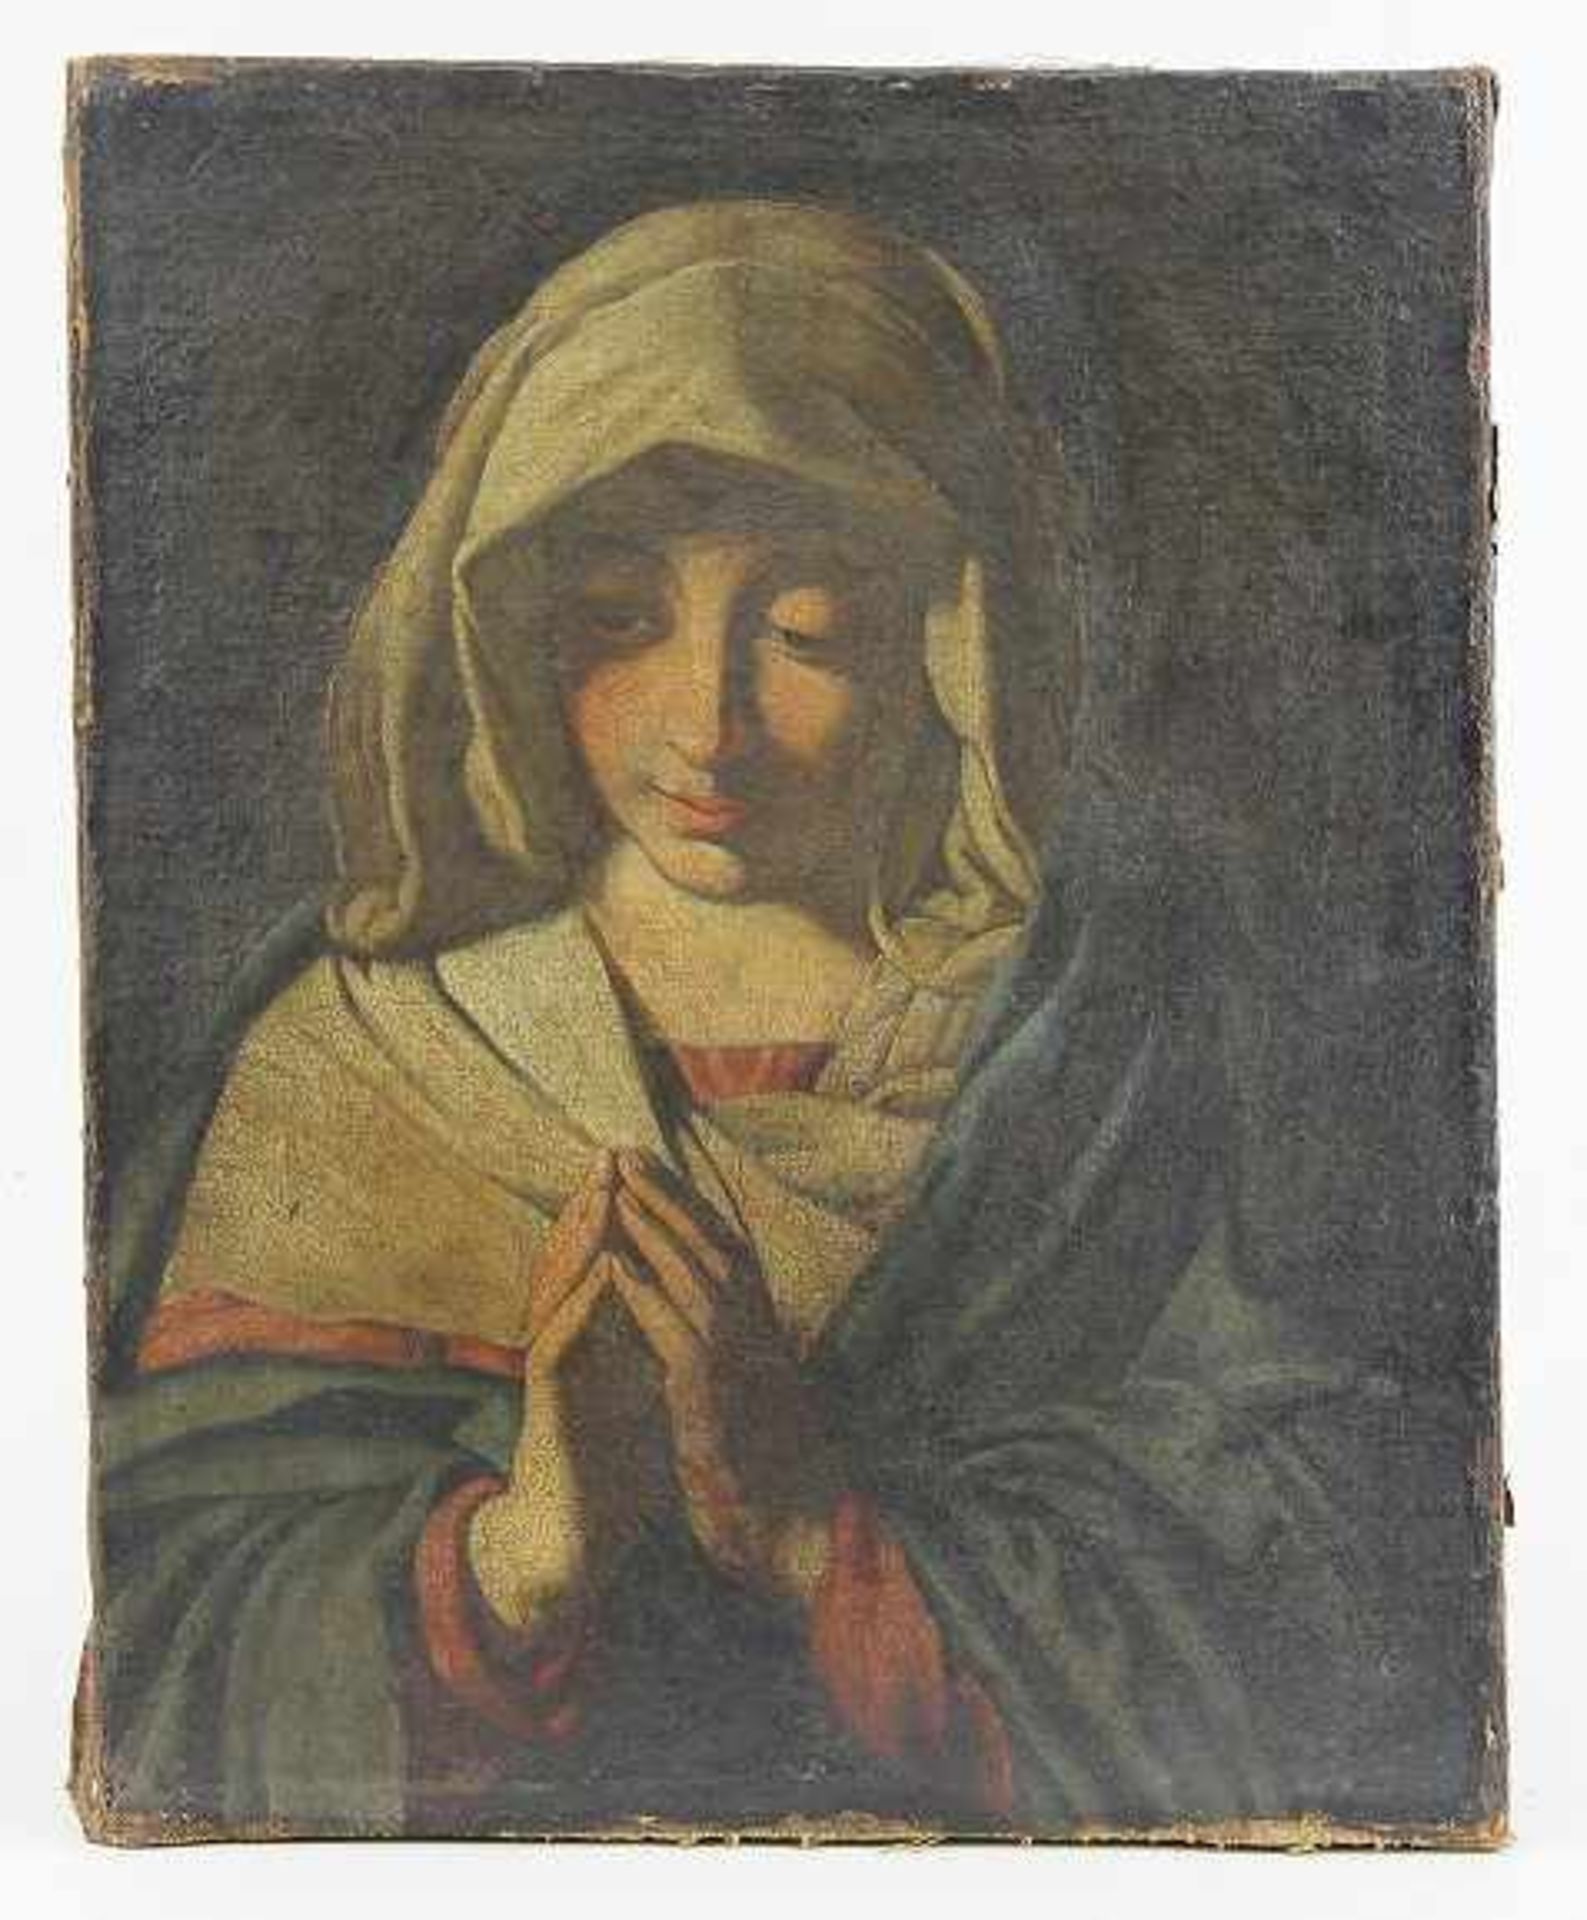 Salvi, Giovanni Batista, called Sassoferrato (Sassoferrato 1606 - 1685 Rome) or Follower